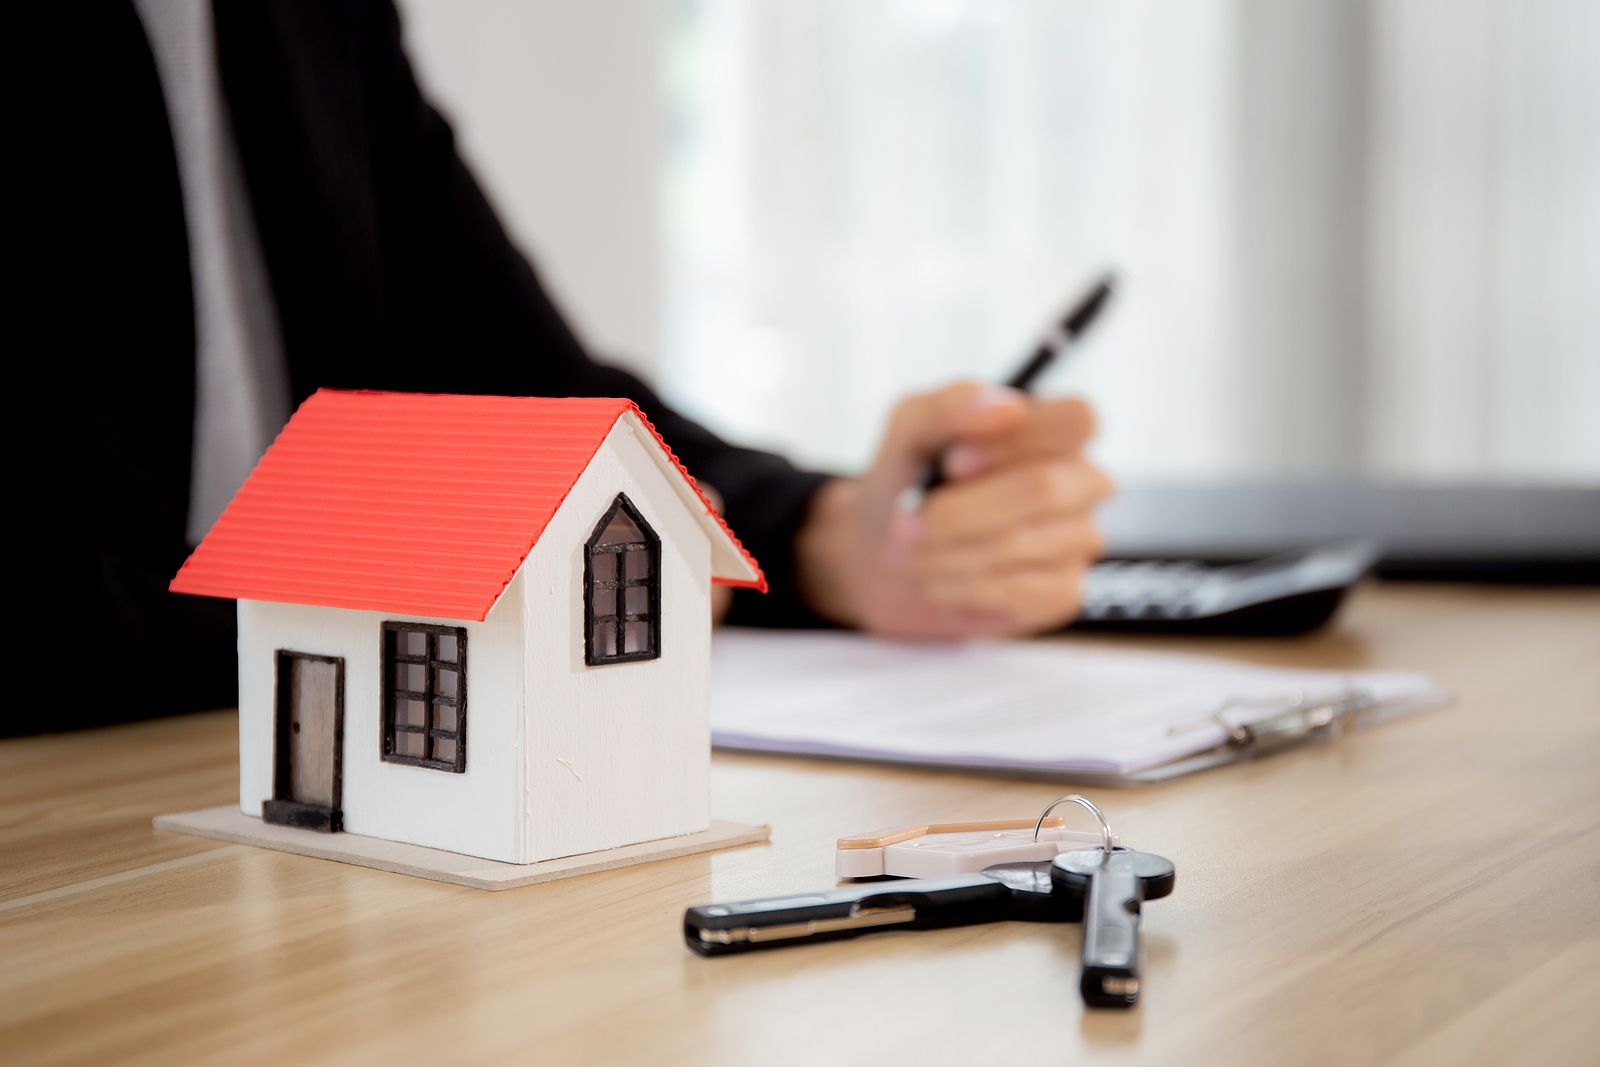 Comprar una casa sin hipoteca: ¿qué opciones hay?